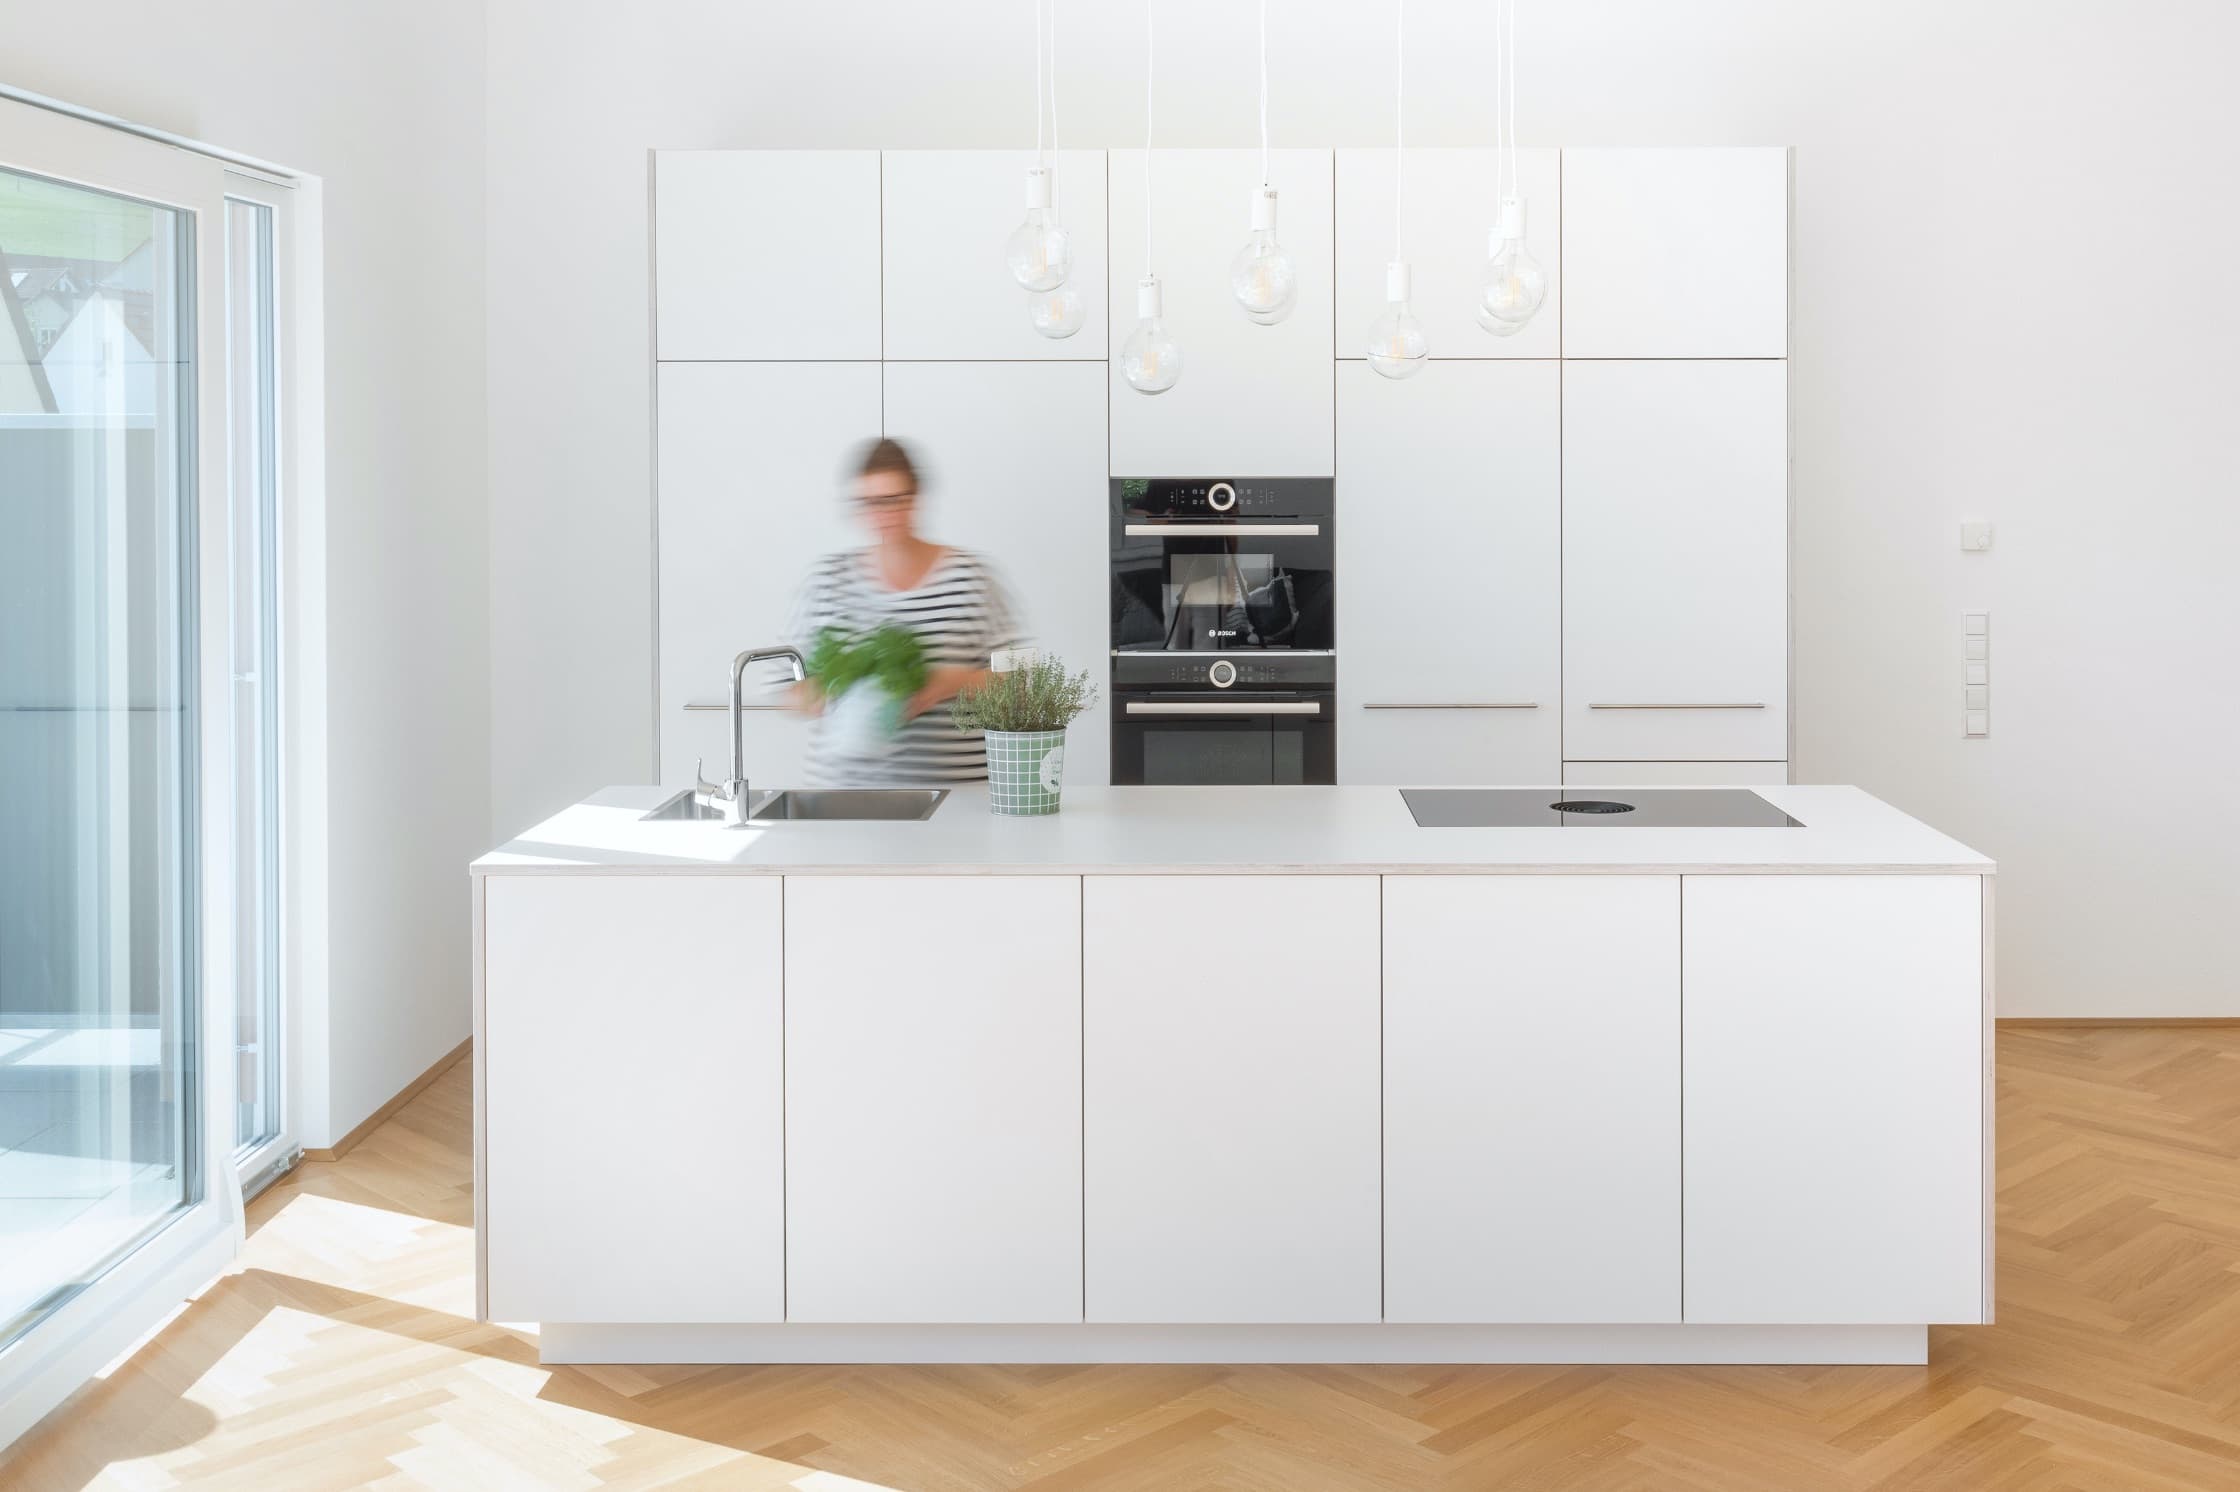 Die Kunst der Reduktion: So planen Sie Ihre perfekte minimalistische Küche